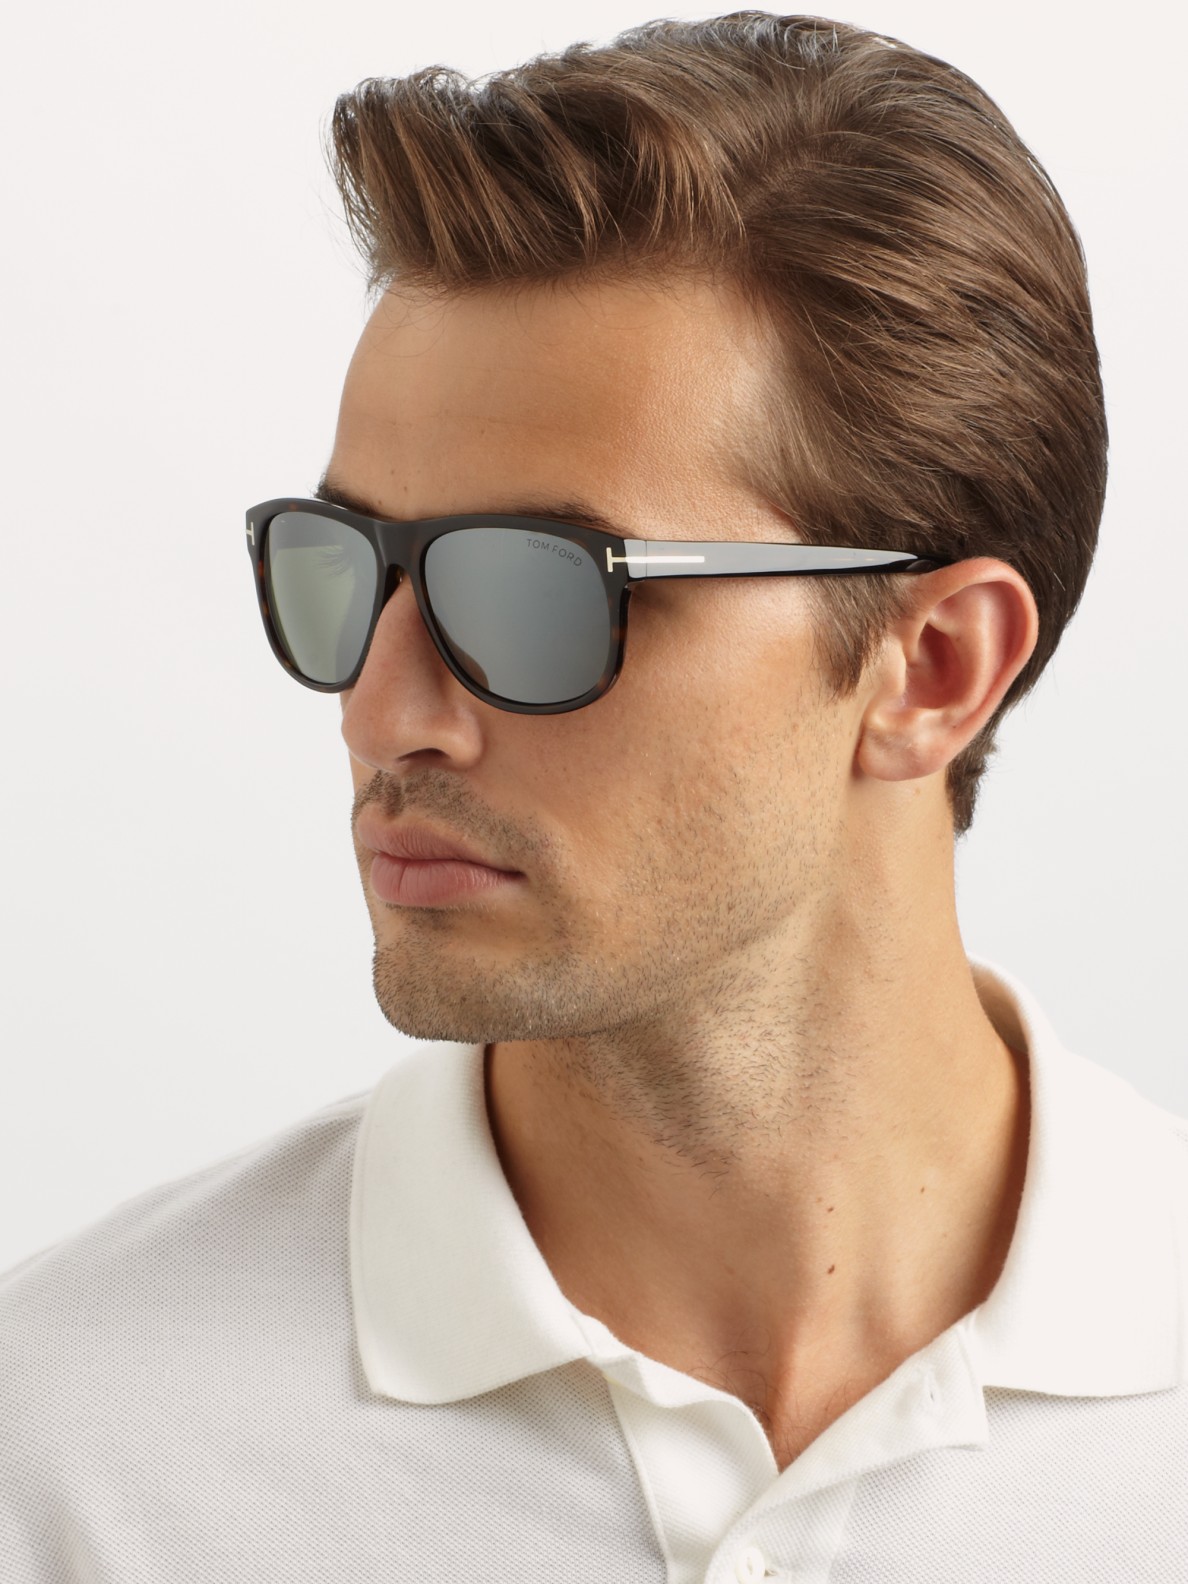 Tom Ford Plastic Wayfarer Sunglasses in Black for Men - Lyst